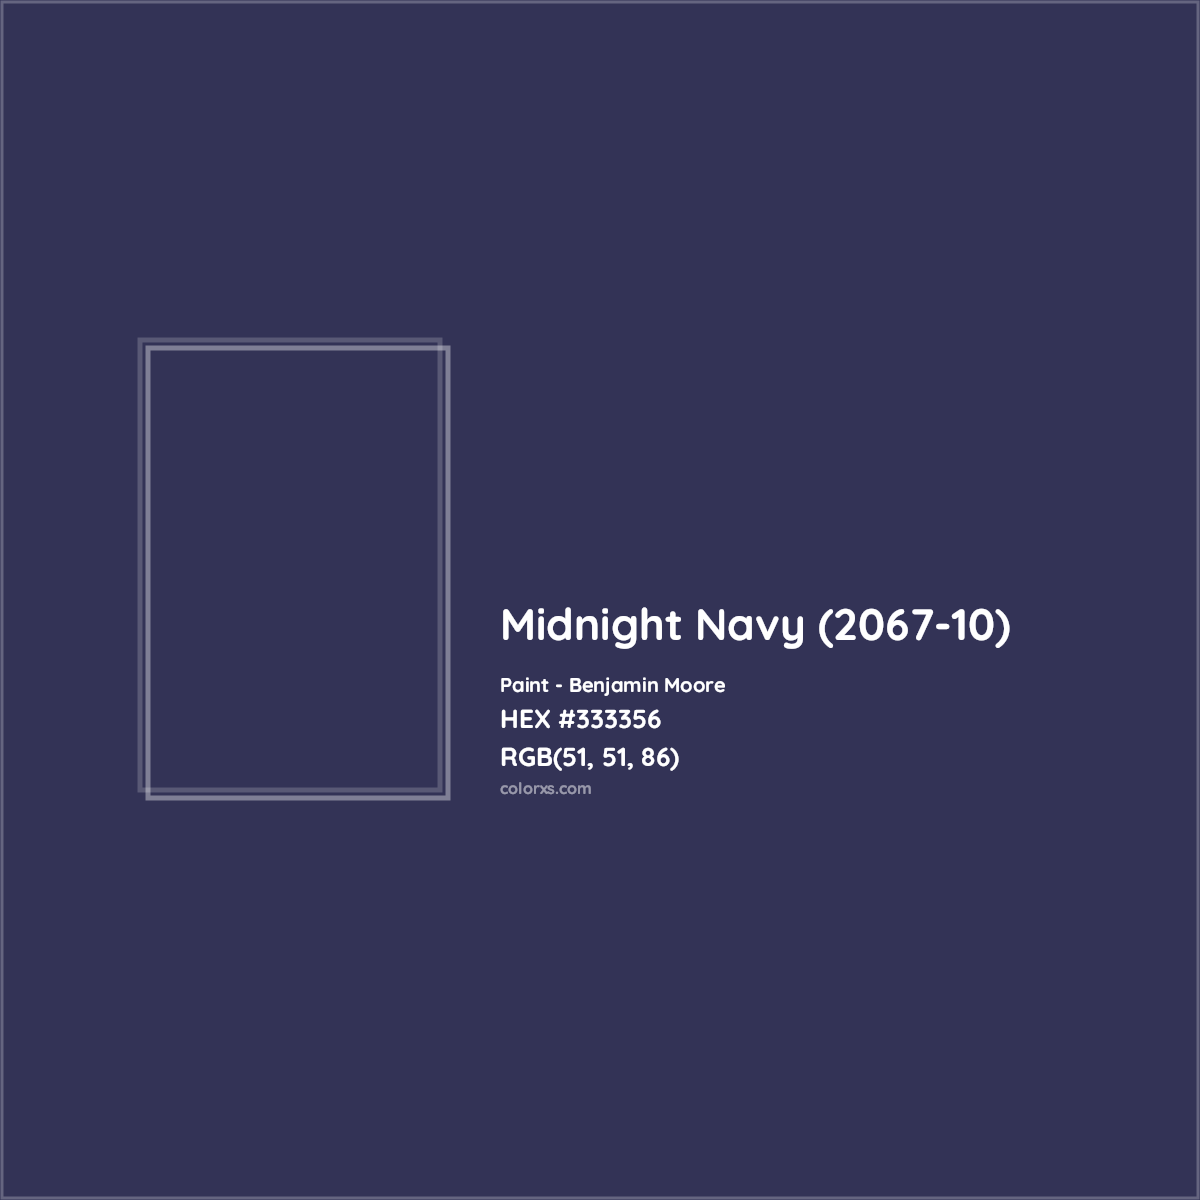 HEX #333356 Midnight Navy (2067-10) Paint Benjamin Moore - Color Code